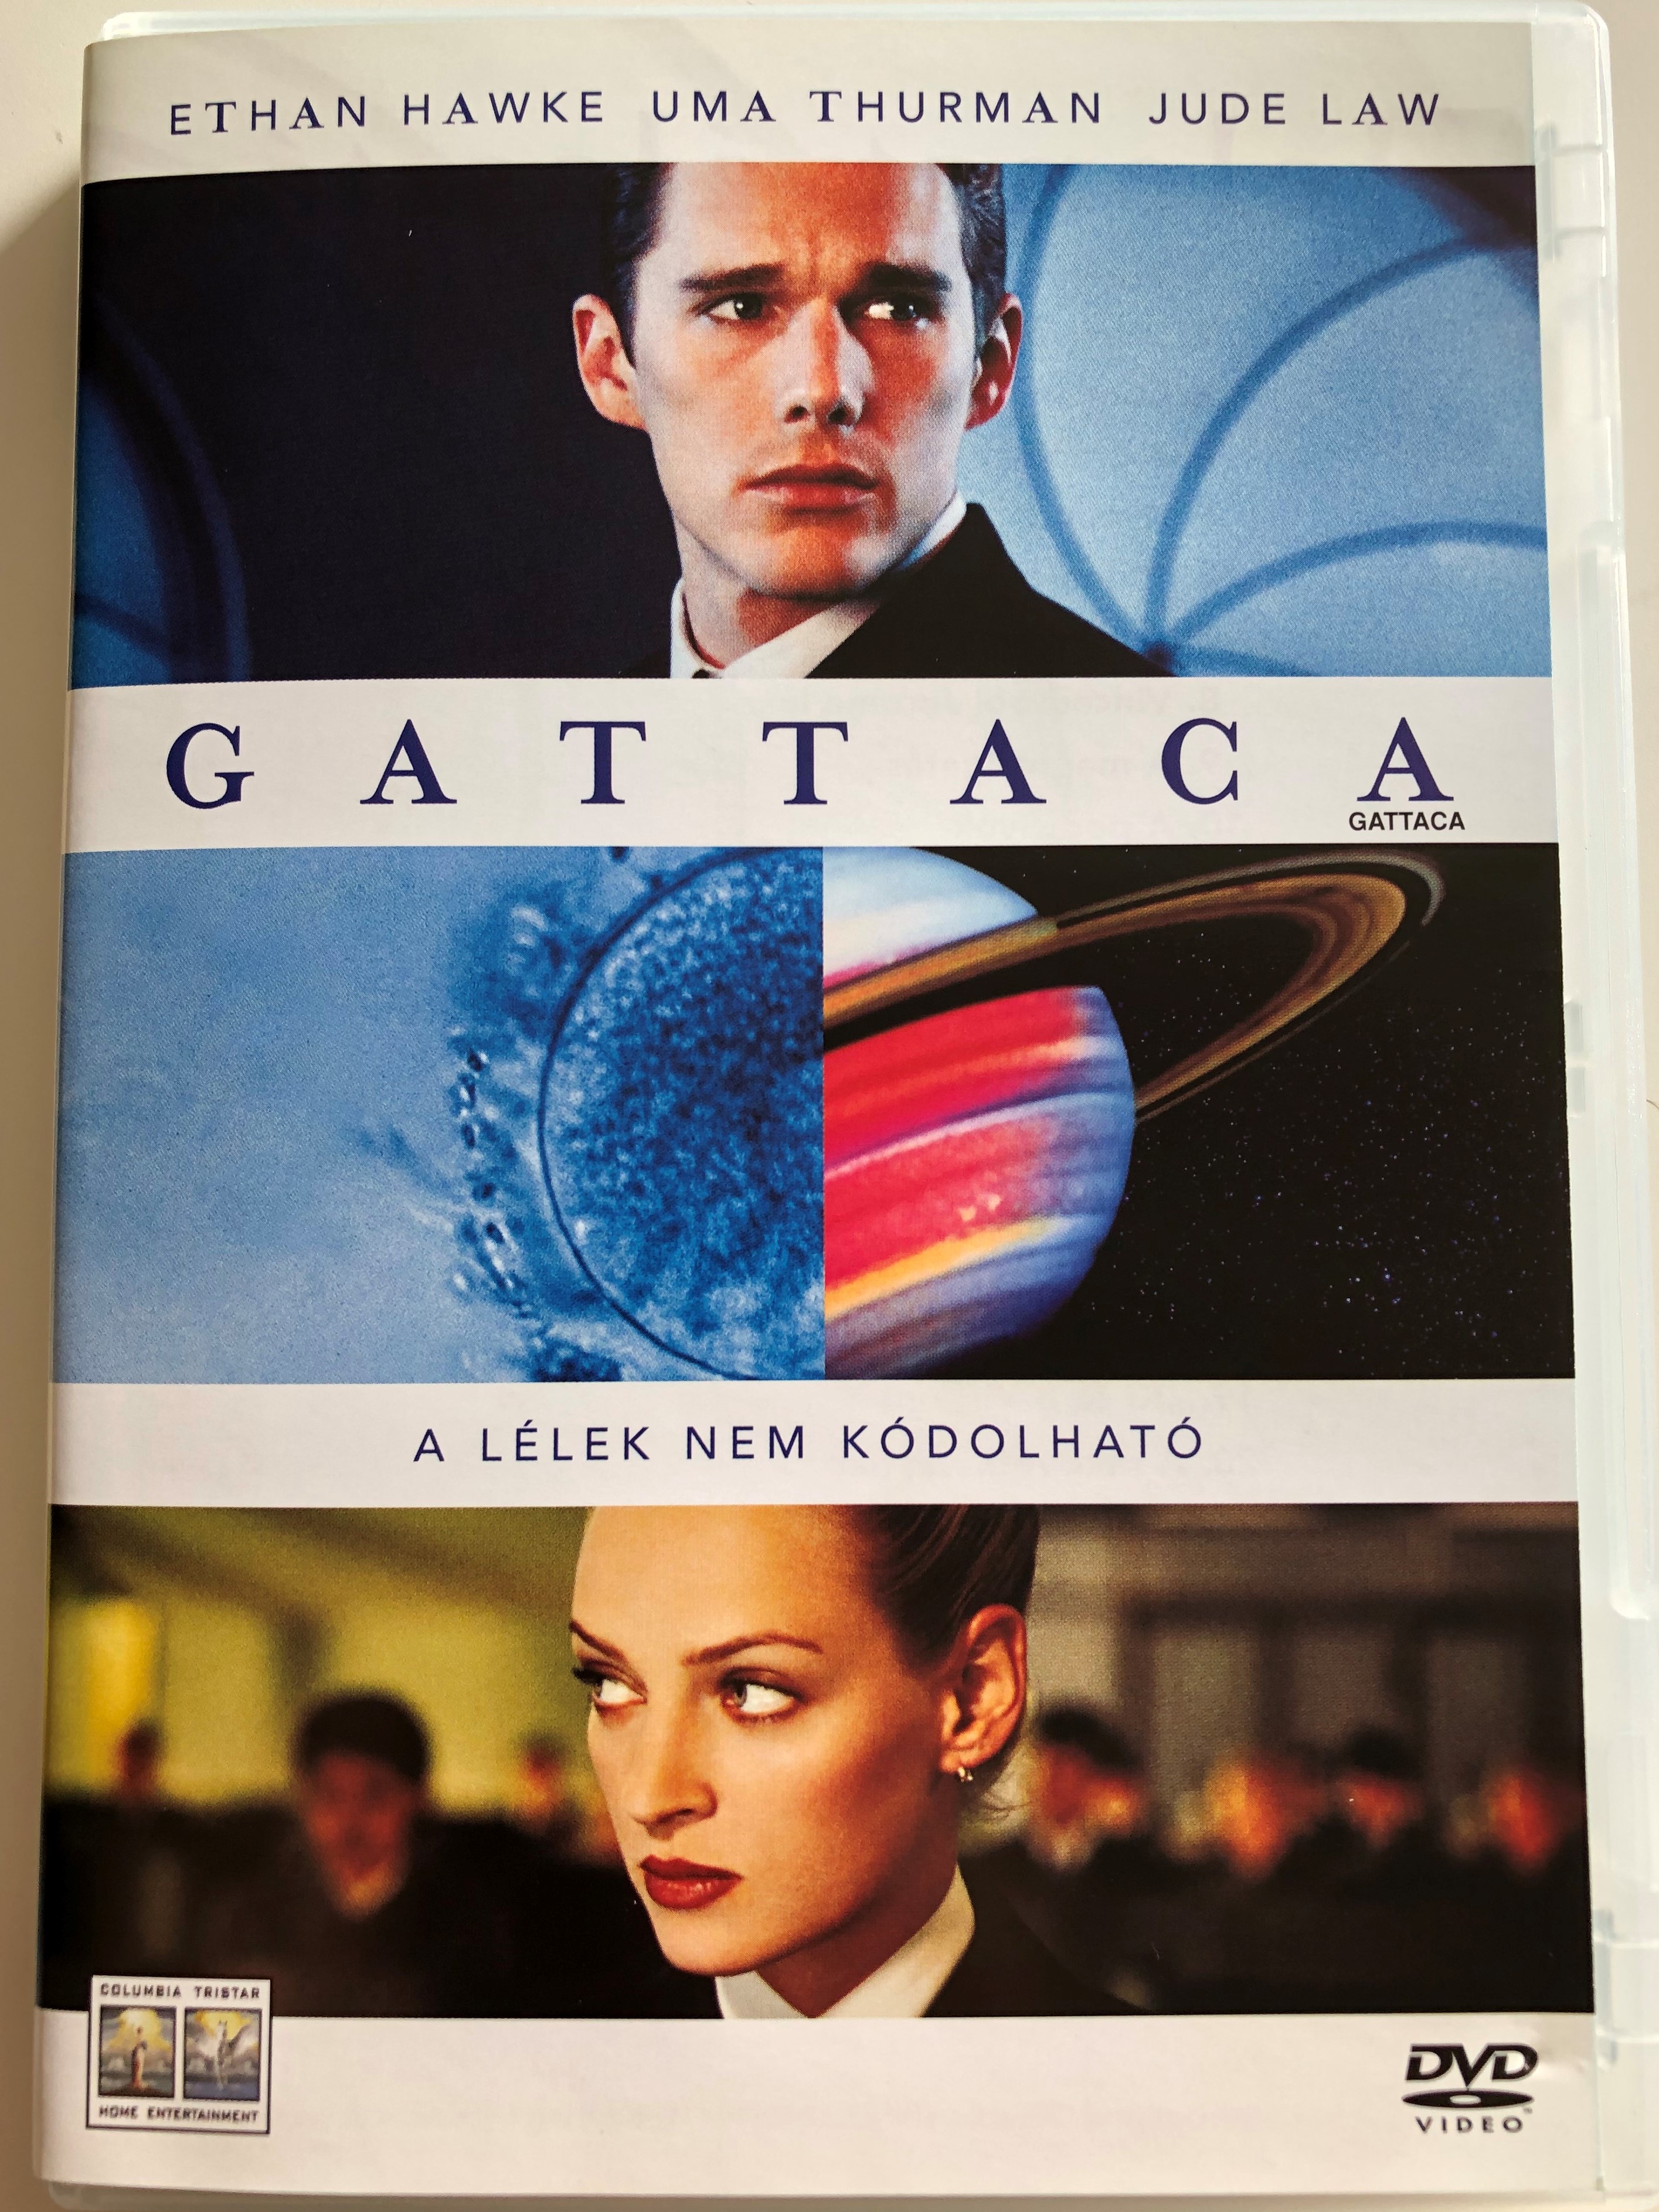 Gattaca DVD 1997 / Directed by Andrew Niccol / Starring: Ethan Hawke, Uma  Thurman, Alan Arkin, Jude Law - bibleinmylanguage